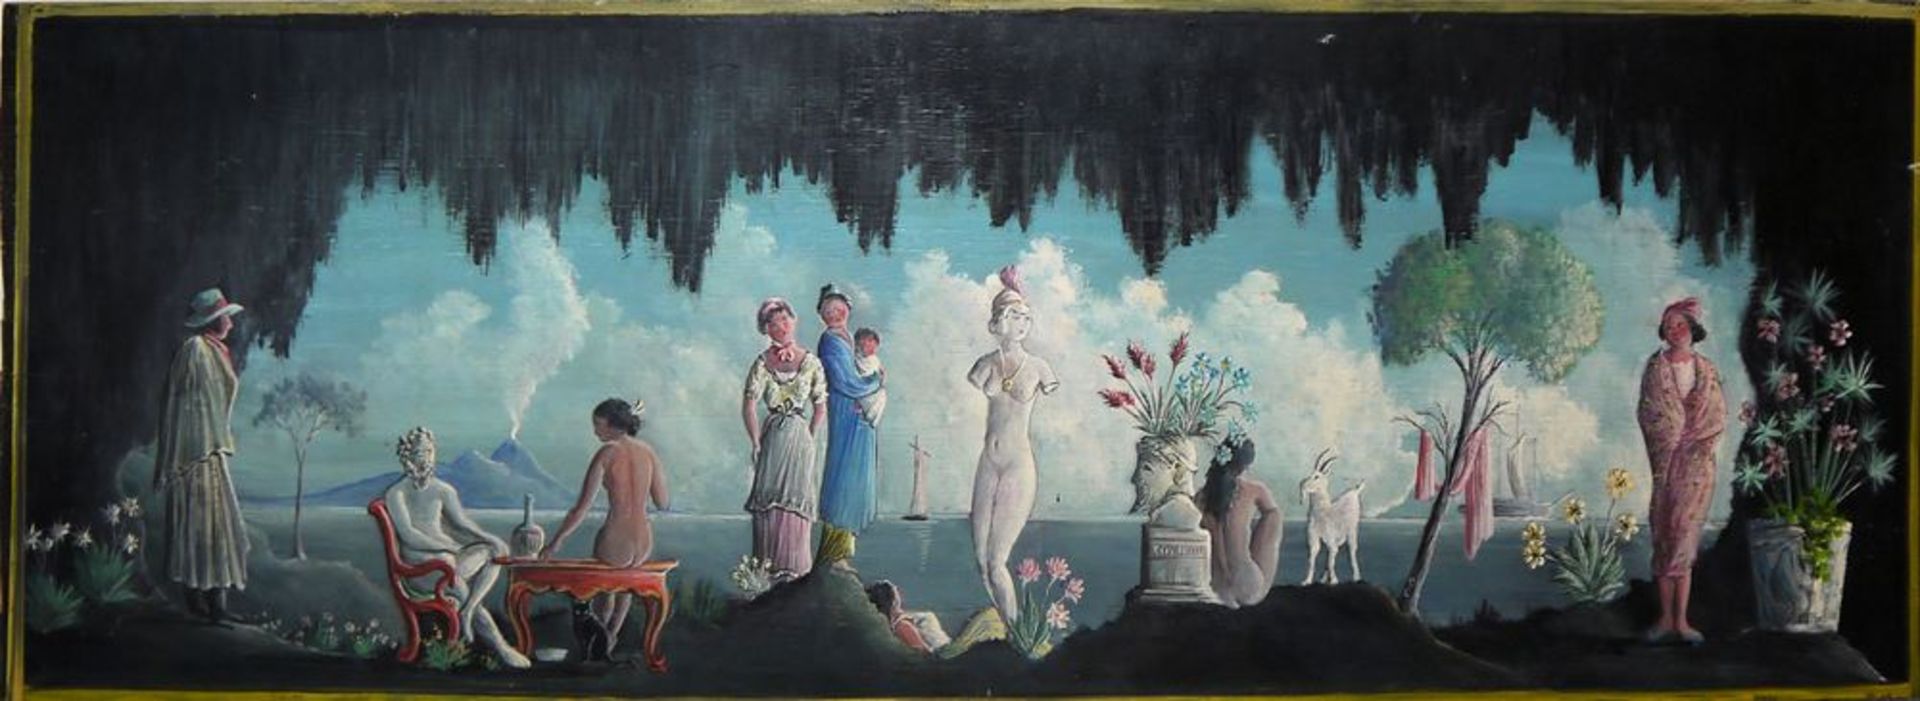 Carl Grünwald, "Bühnenbild", Gemälde von 1958